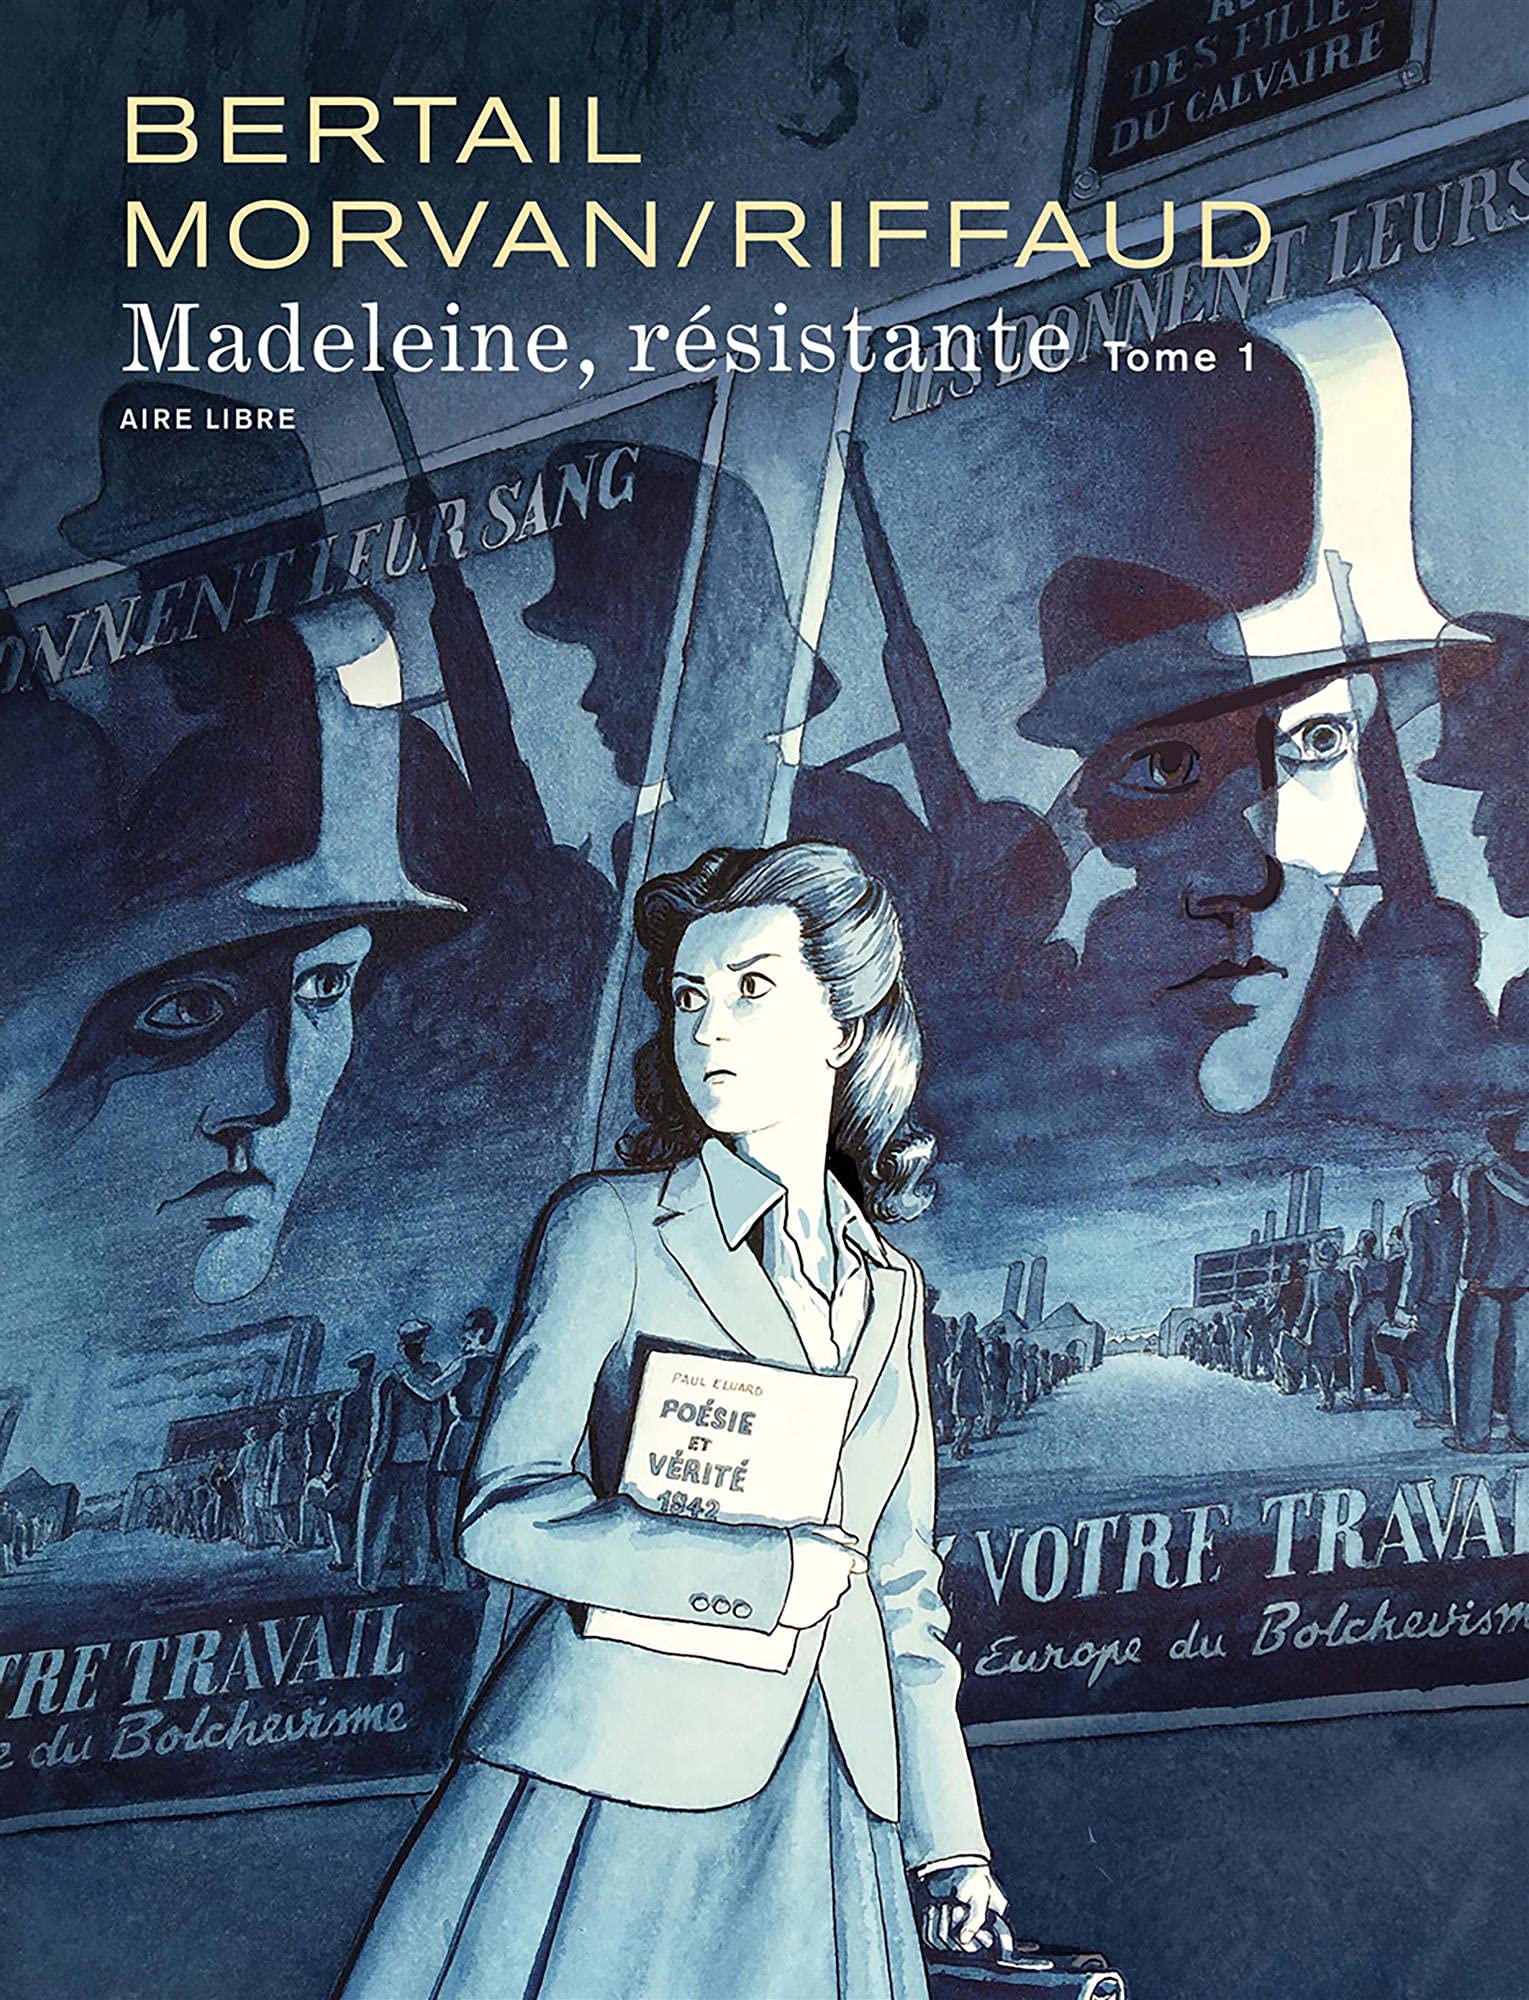 Madeleine, résistante - Tome 1 : Madeleine, résistante tome 1 - Cahiers 2/3  / Edition spéciale (Limitée)